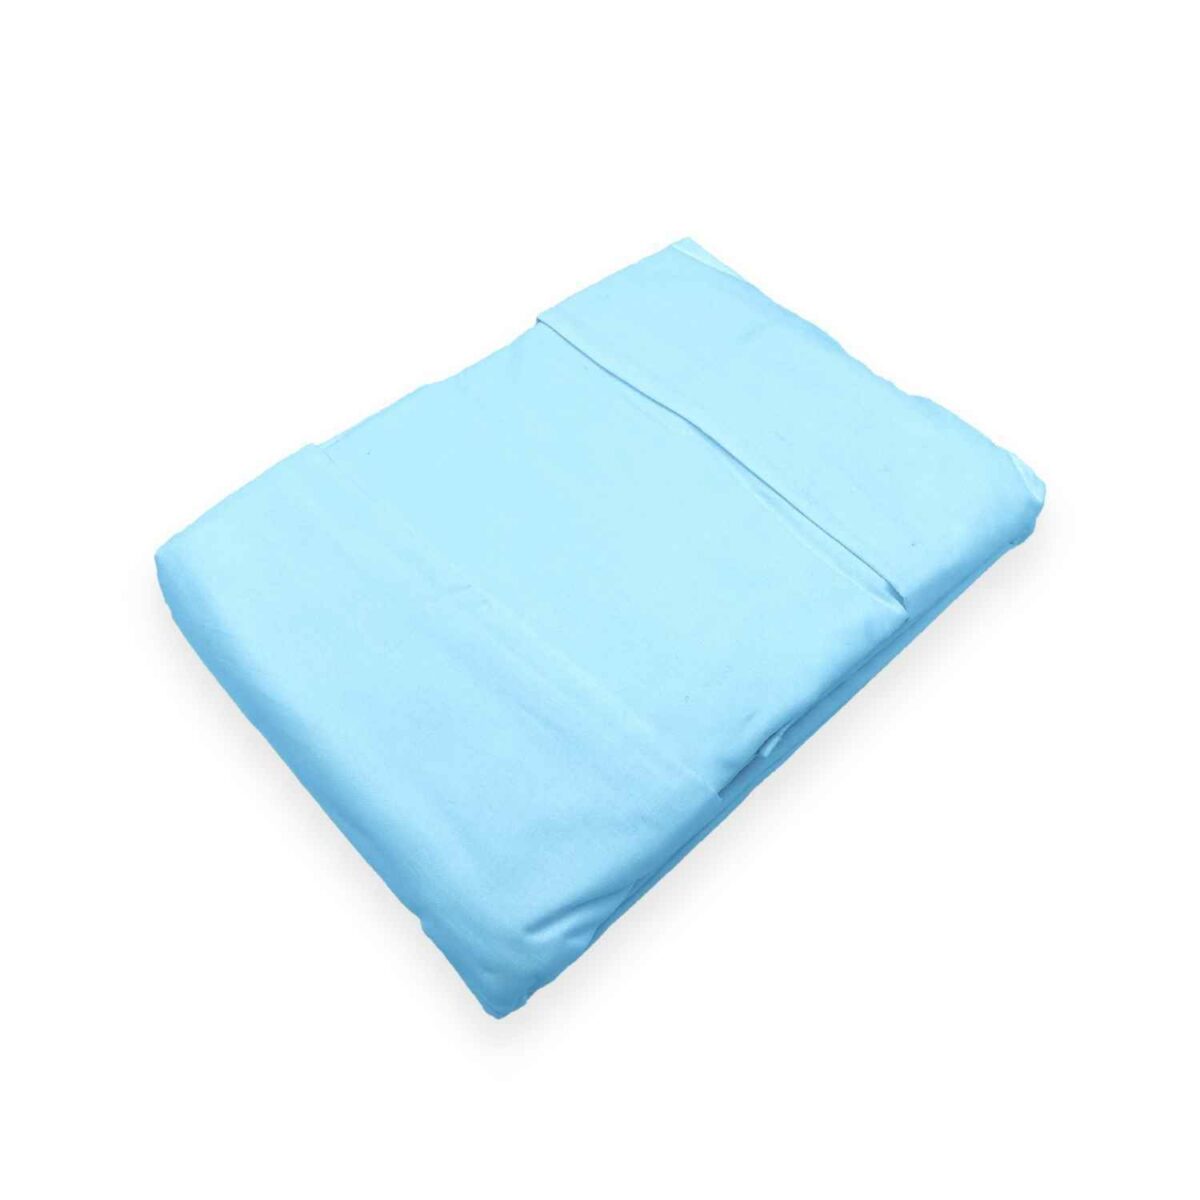 azzurro-coloratissimi-completo-lenzuola-puro-cotone-tinta-unita-cielo-fold